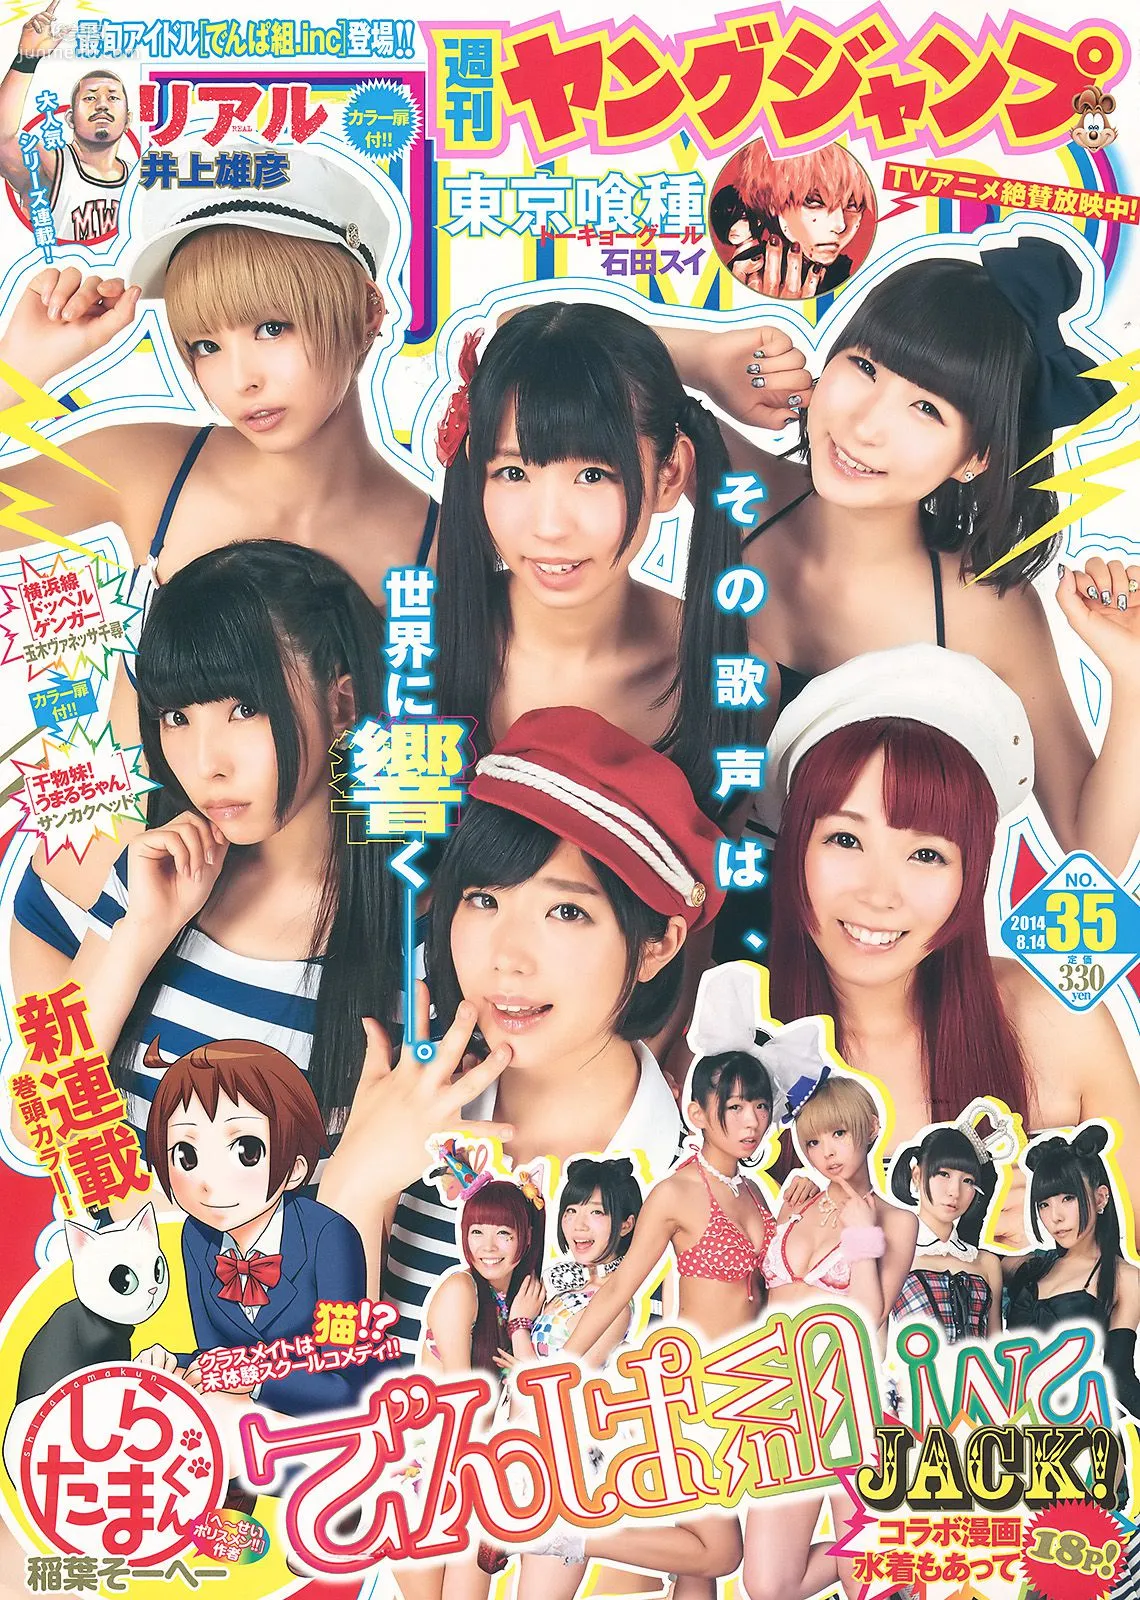 でんぱ組.inc 片岡沙耶 [Weekly Young Jump] 2014年No.35 写真杂志1